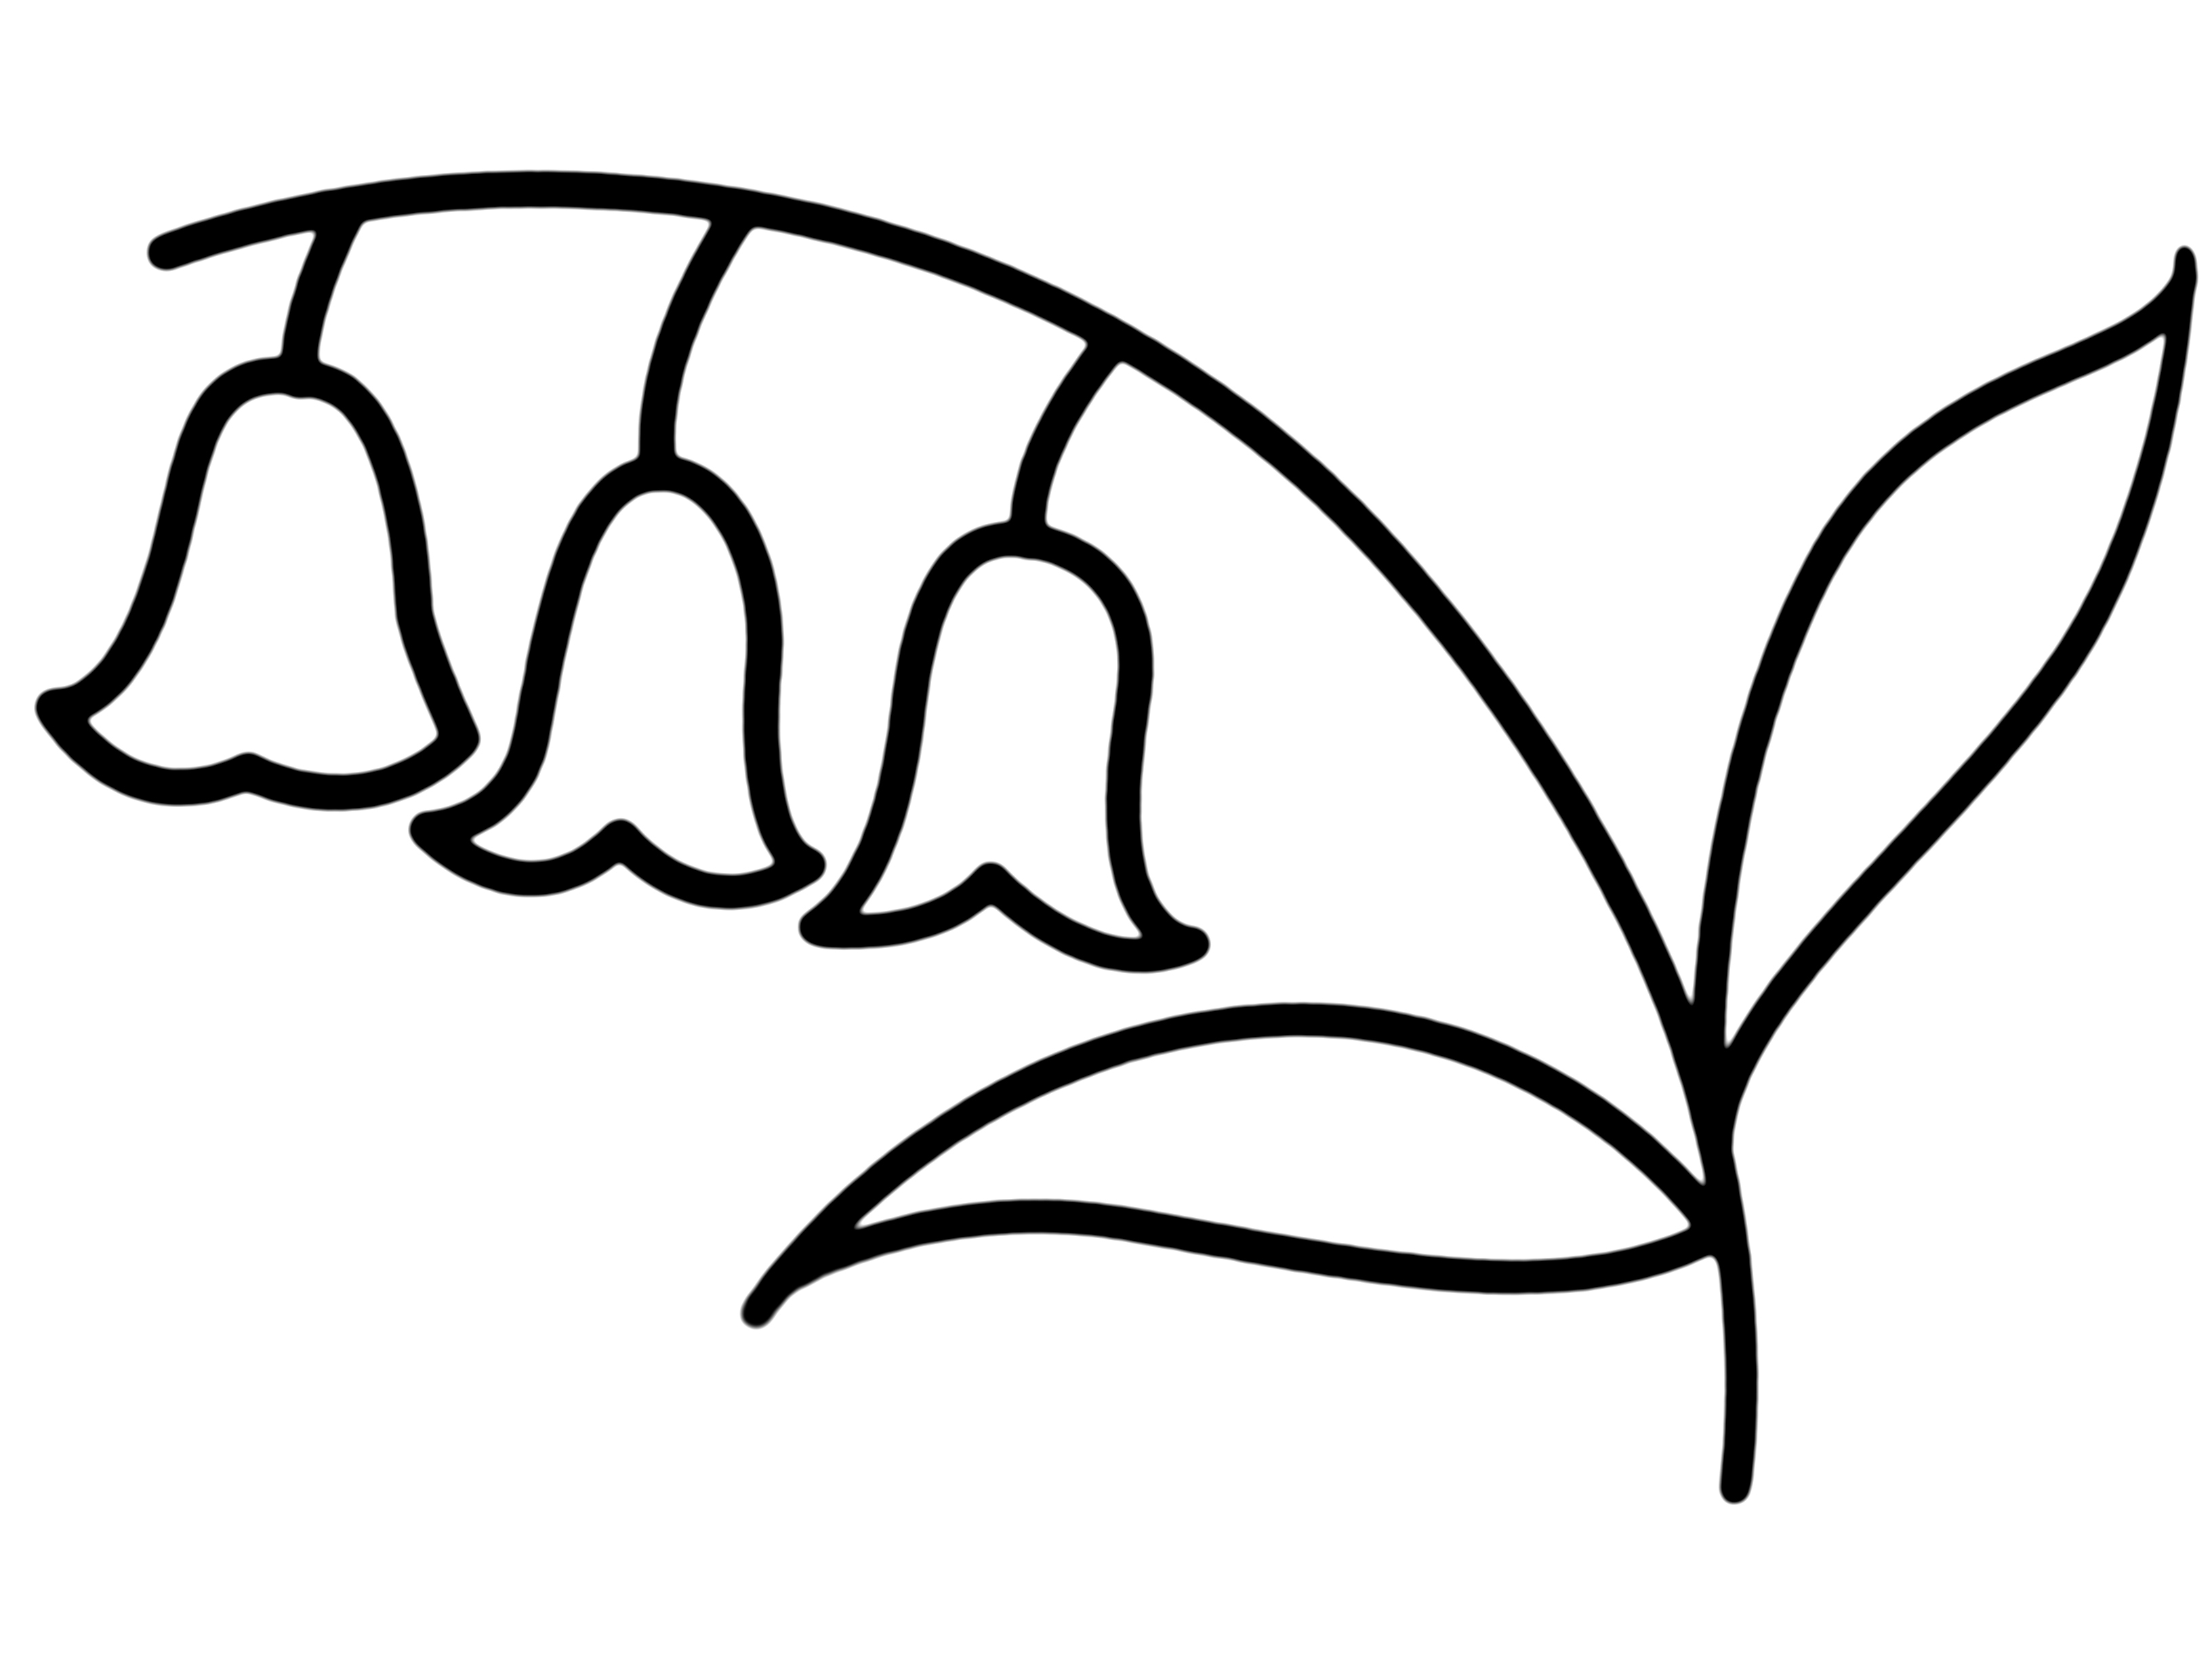 植物(铃兰)简笔画分享,可以右键复制打印出来